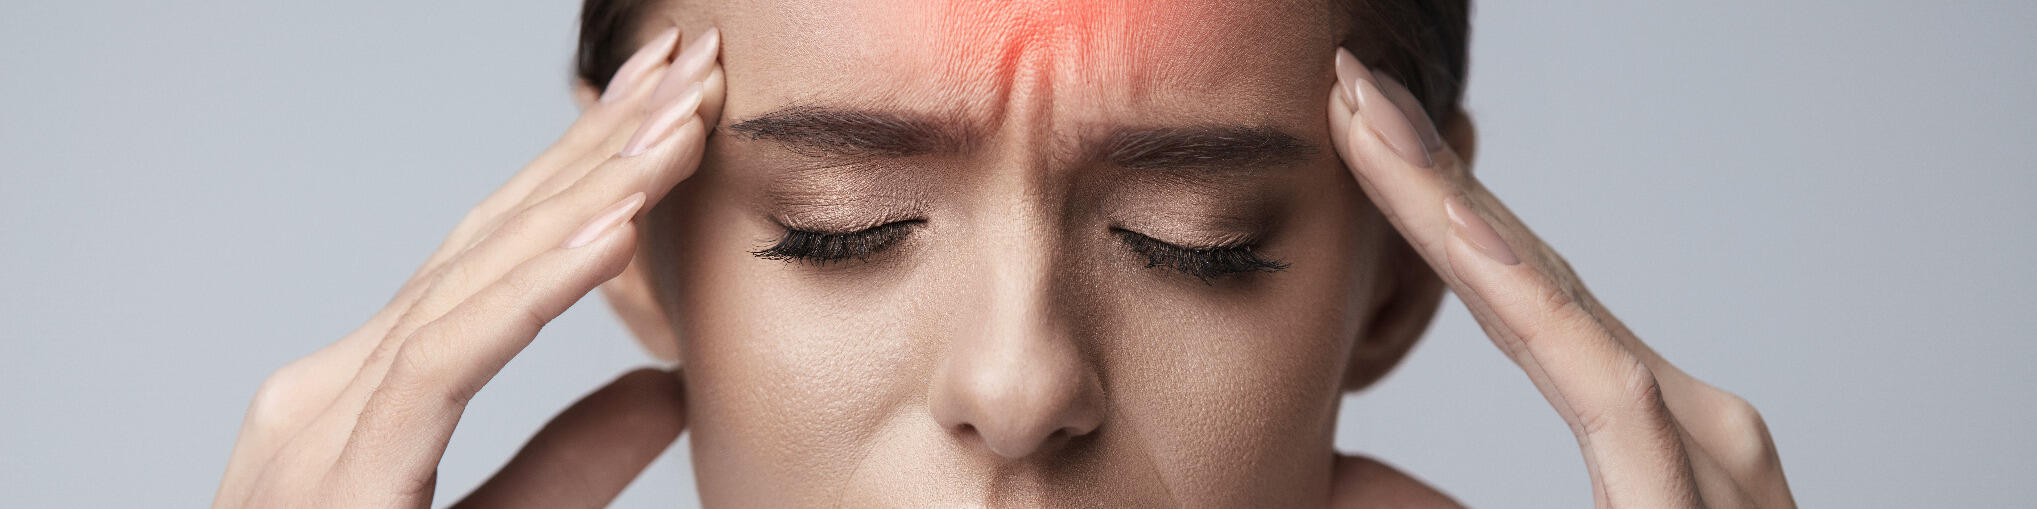 Indikationen
Erkrankungen von Kopf und Nervensystem